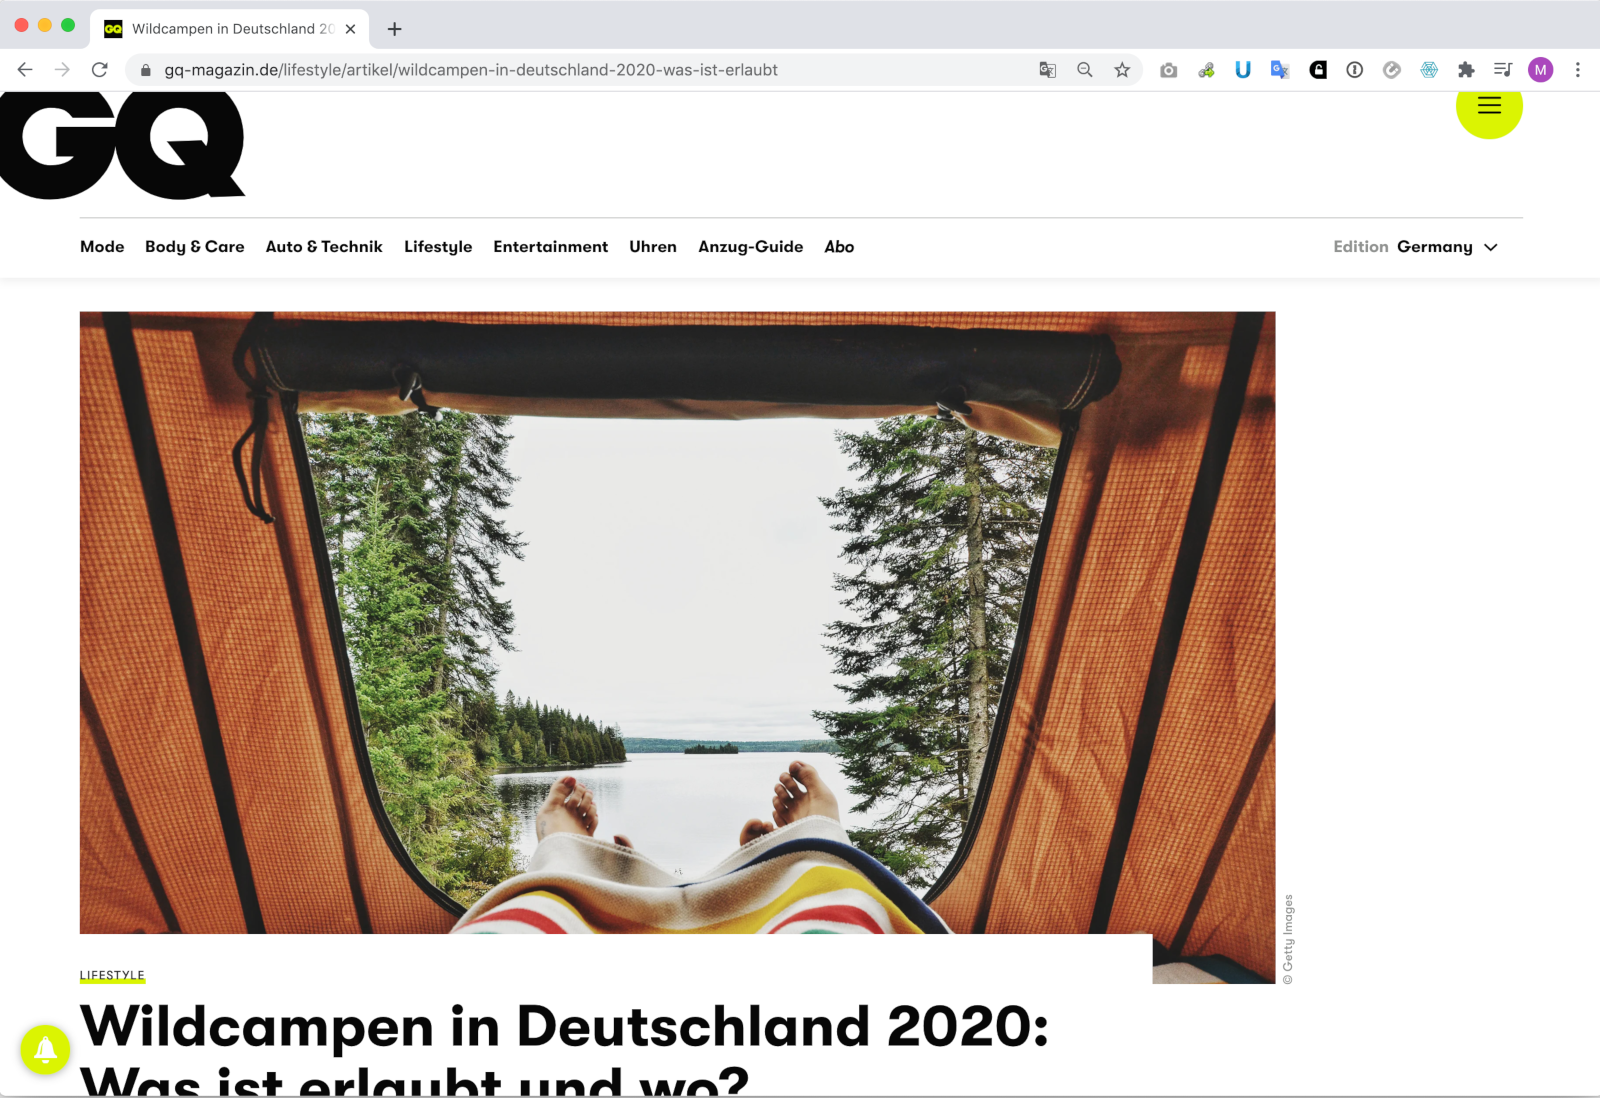 14 Juillet 2020 - GQ sur le camping sauvage en Allemagne